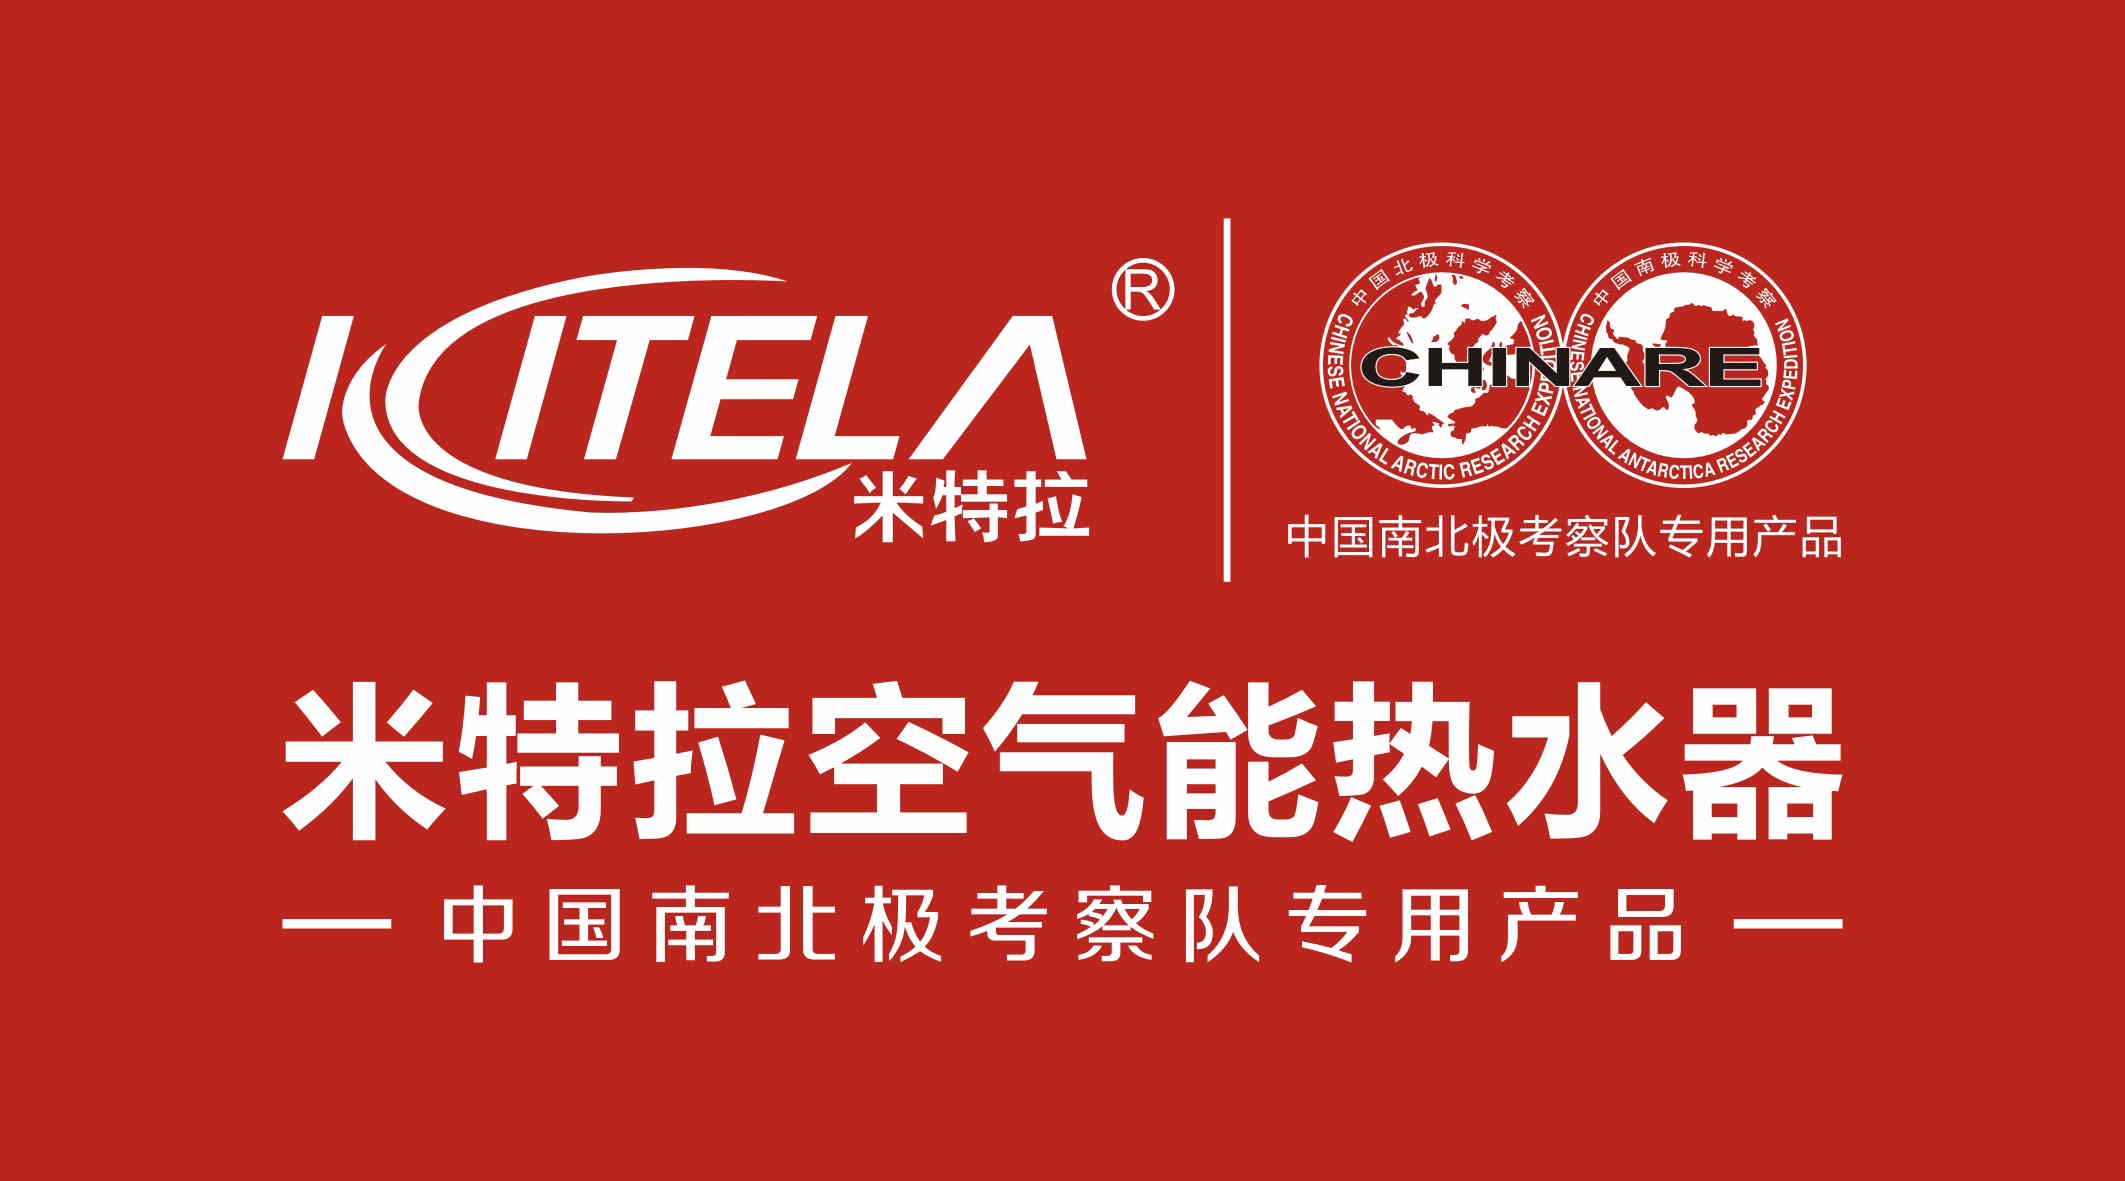 广东米特拉电器科技有限公司